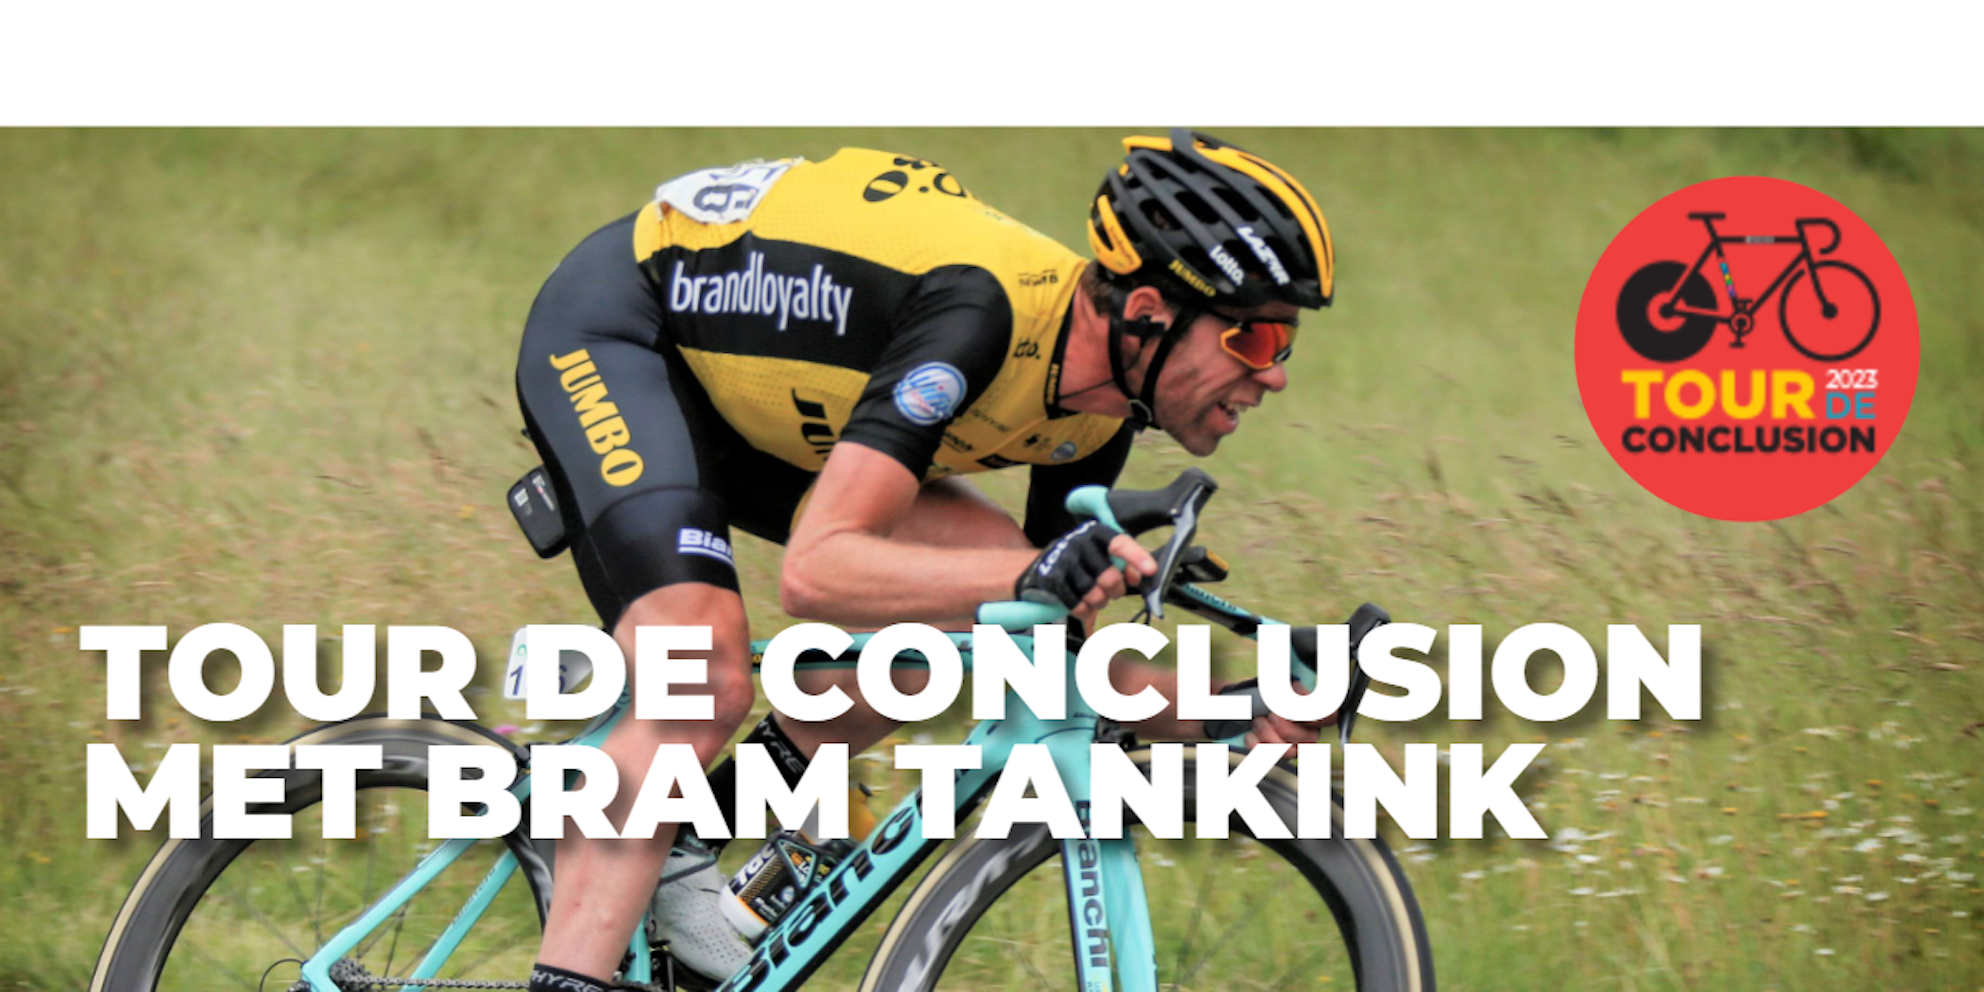 Tour de Conclusion met Bram Tankink